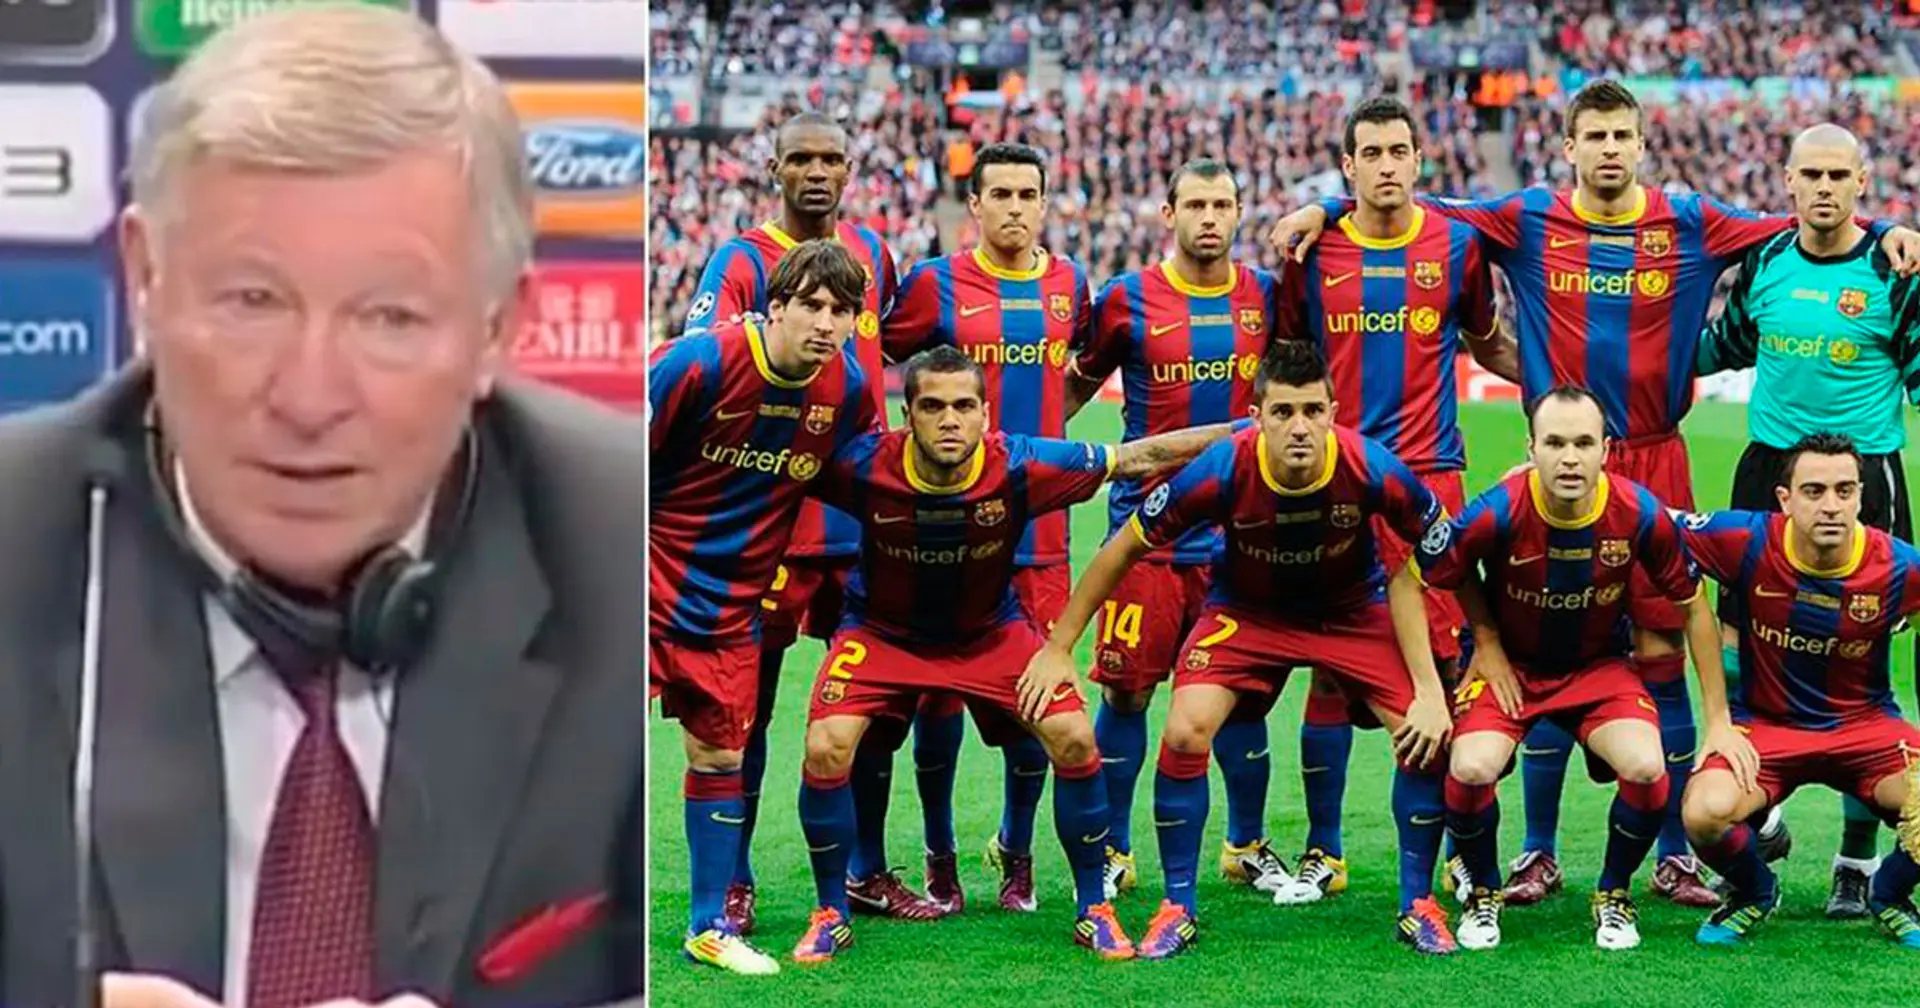 Sir Alex Ferguson glaubt, dass Barca-2011 die Mannschaft ist, die es am meisten verdient, als "Dream Team" bezeichnet zu werden